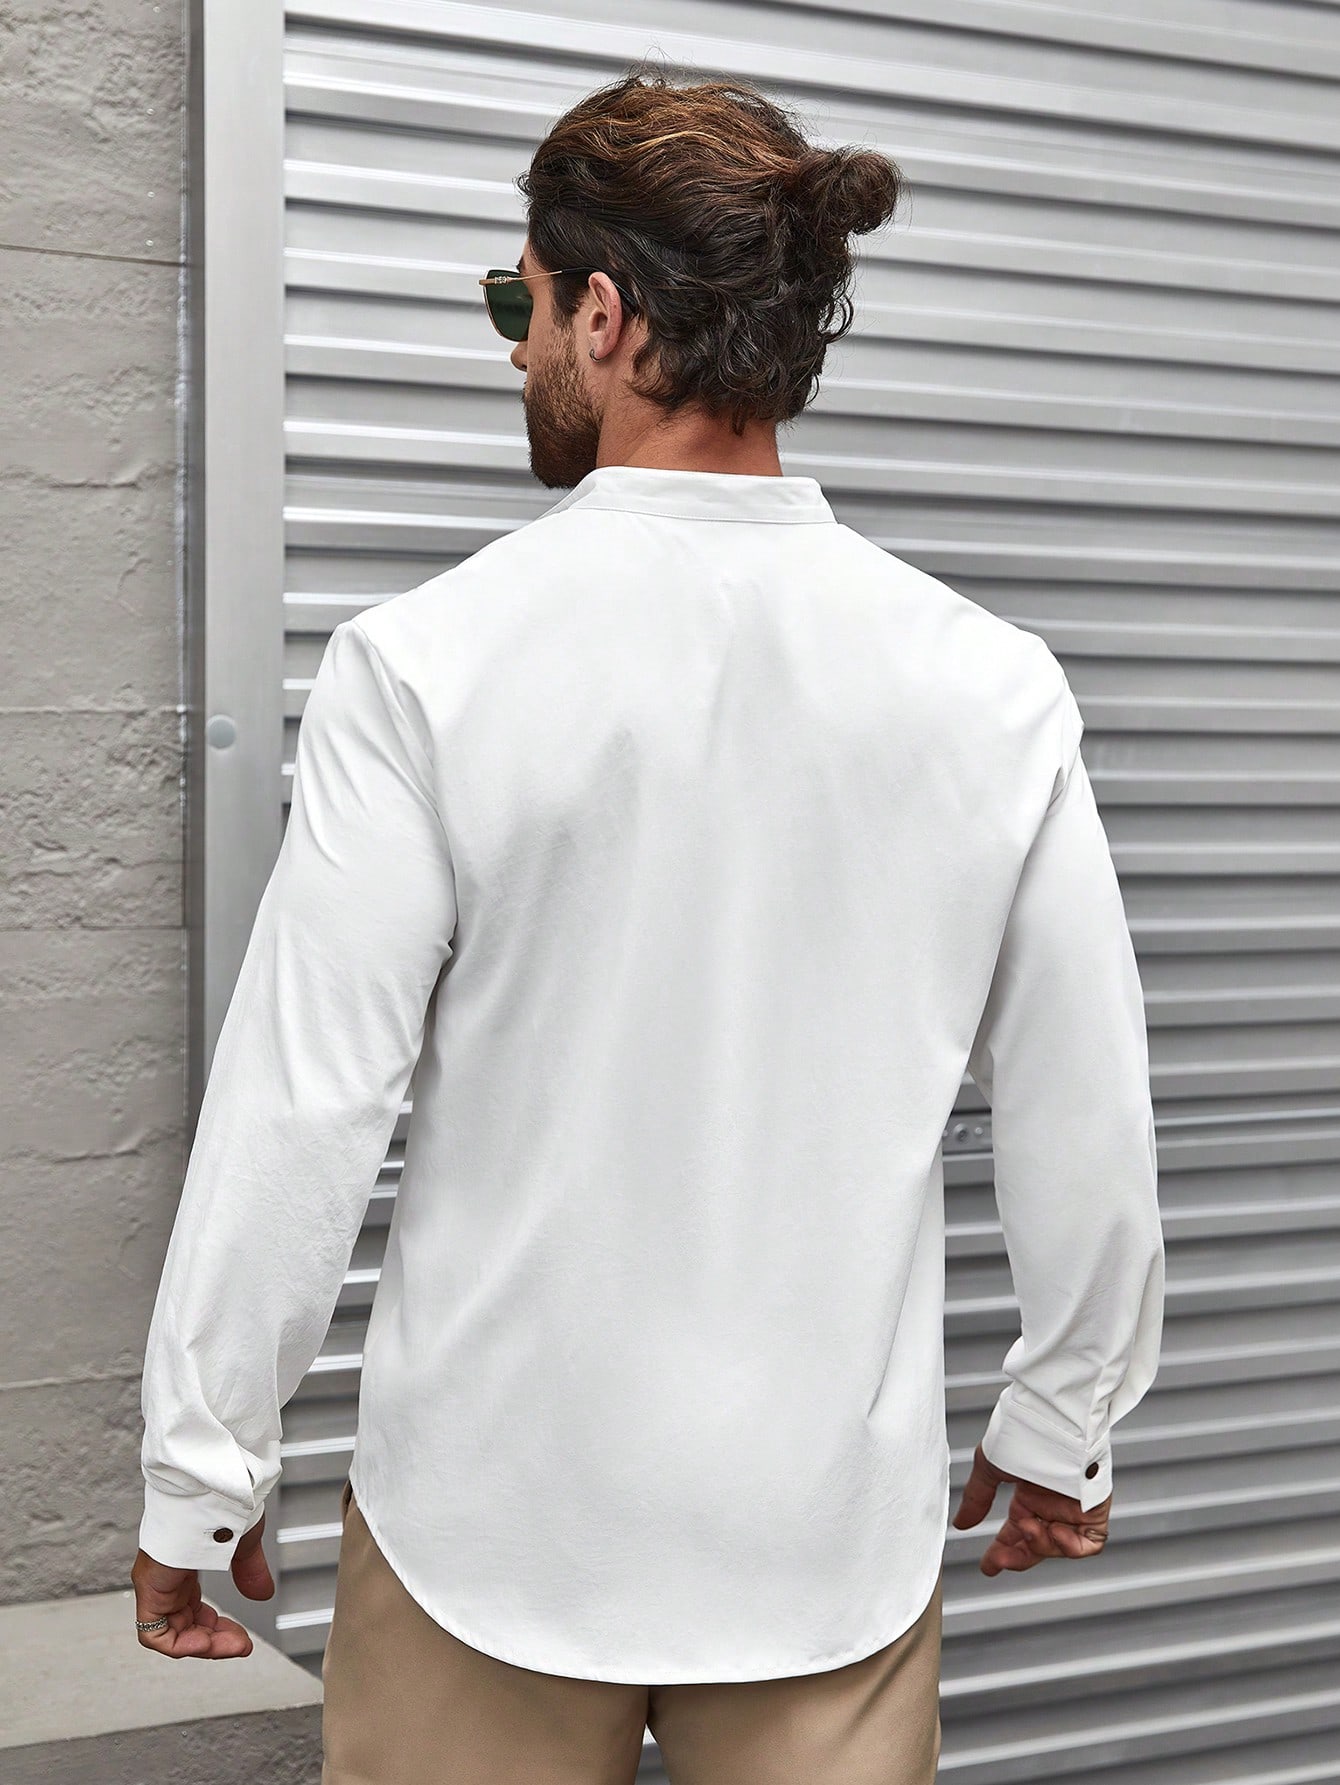 Мужская рубашка с воротником-стойкой и длинным рукавом Manfinity Homme, белый рубашка incerun мужская с воротником стойкой на пуговицах с длинным рукавом